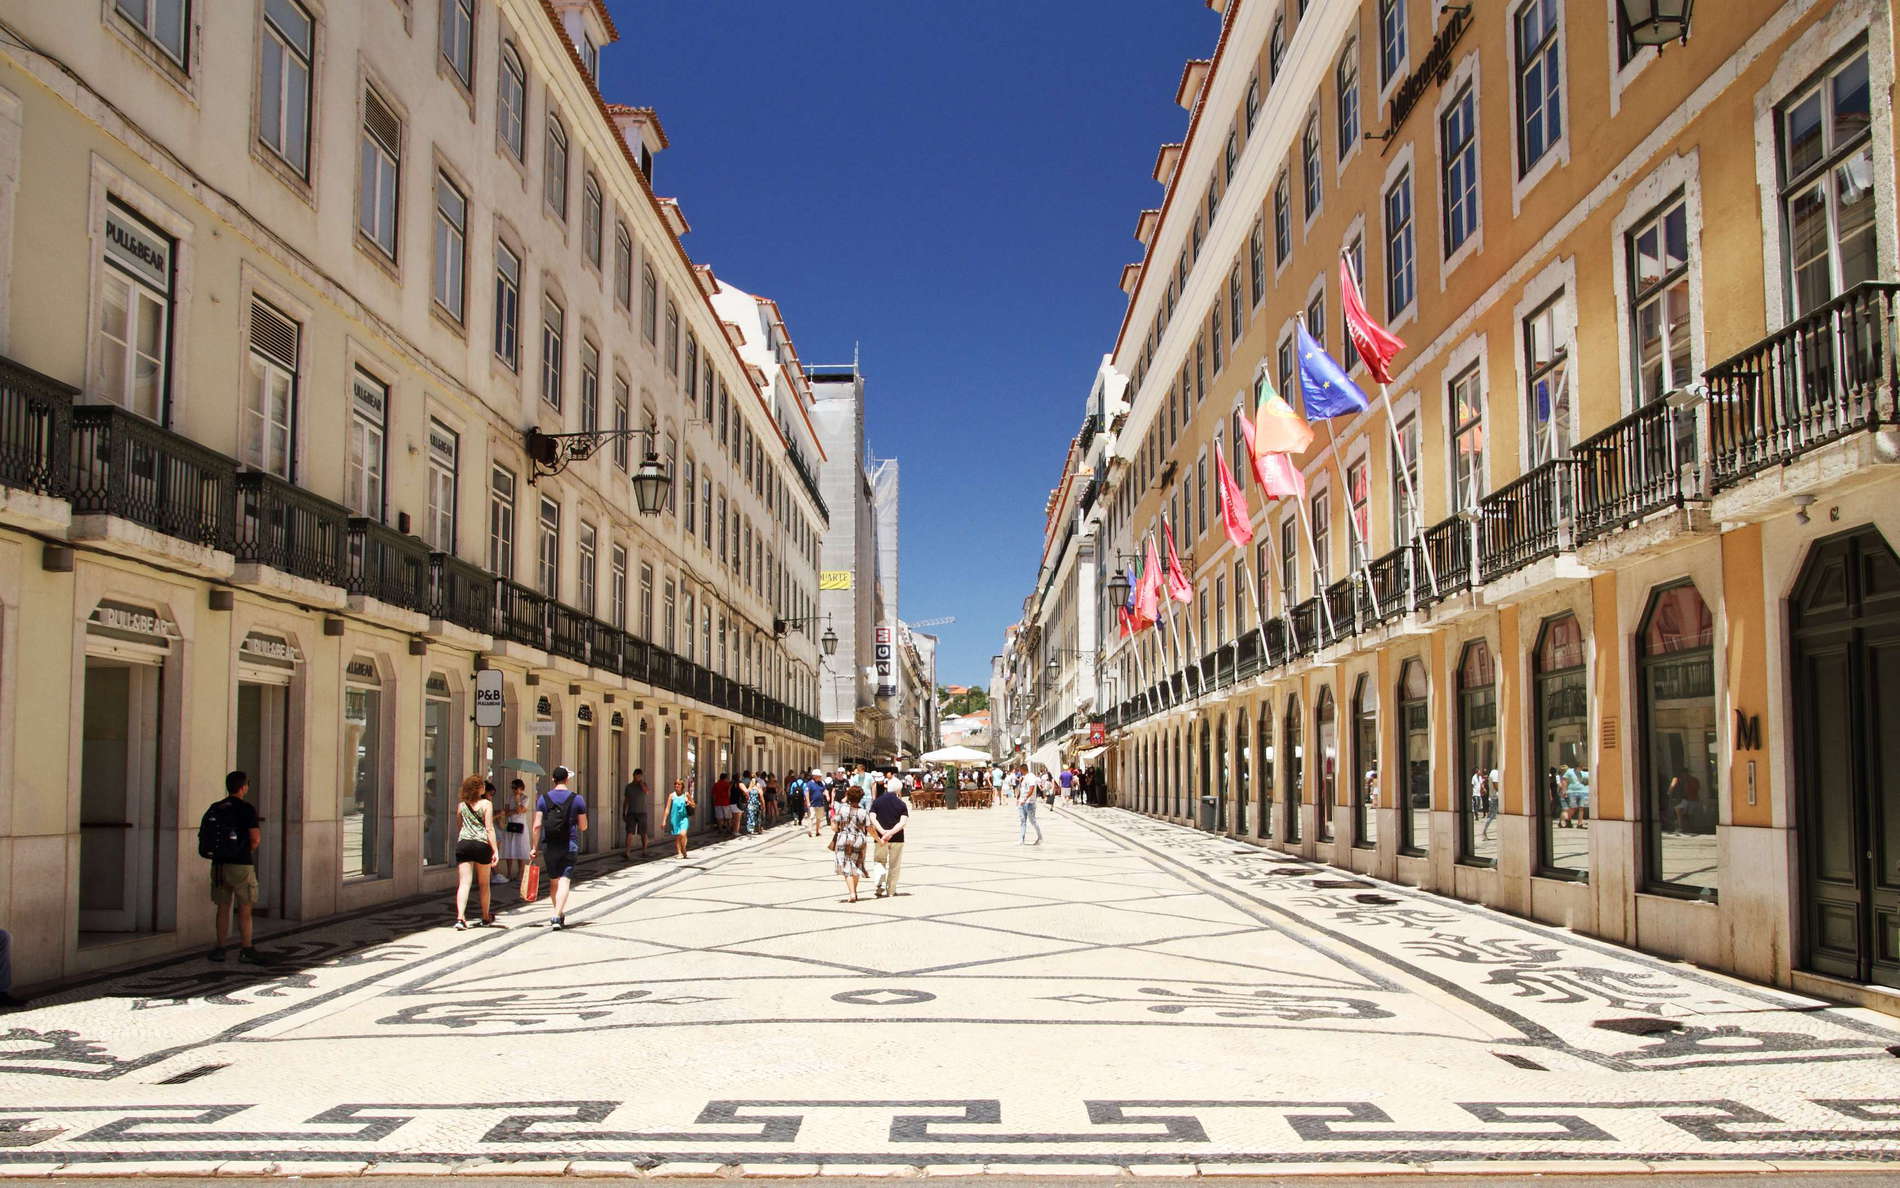 Lisboa  |  Baixa Pombalina